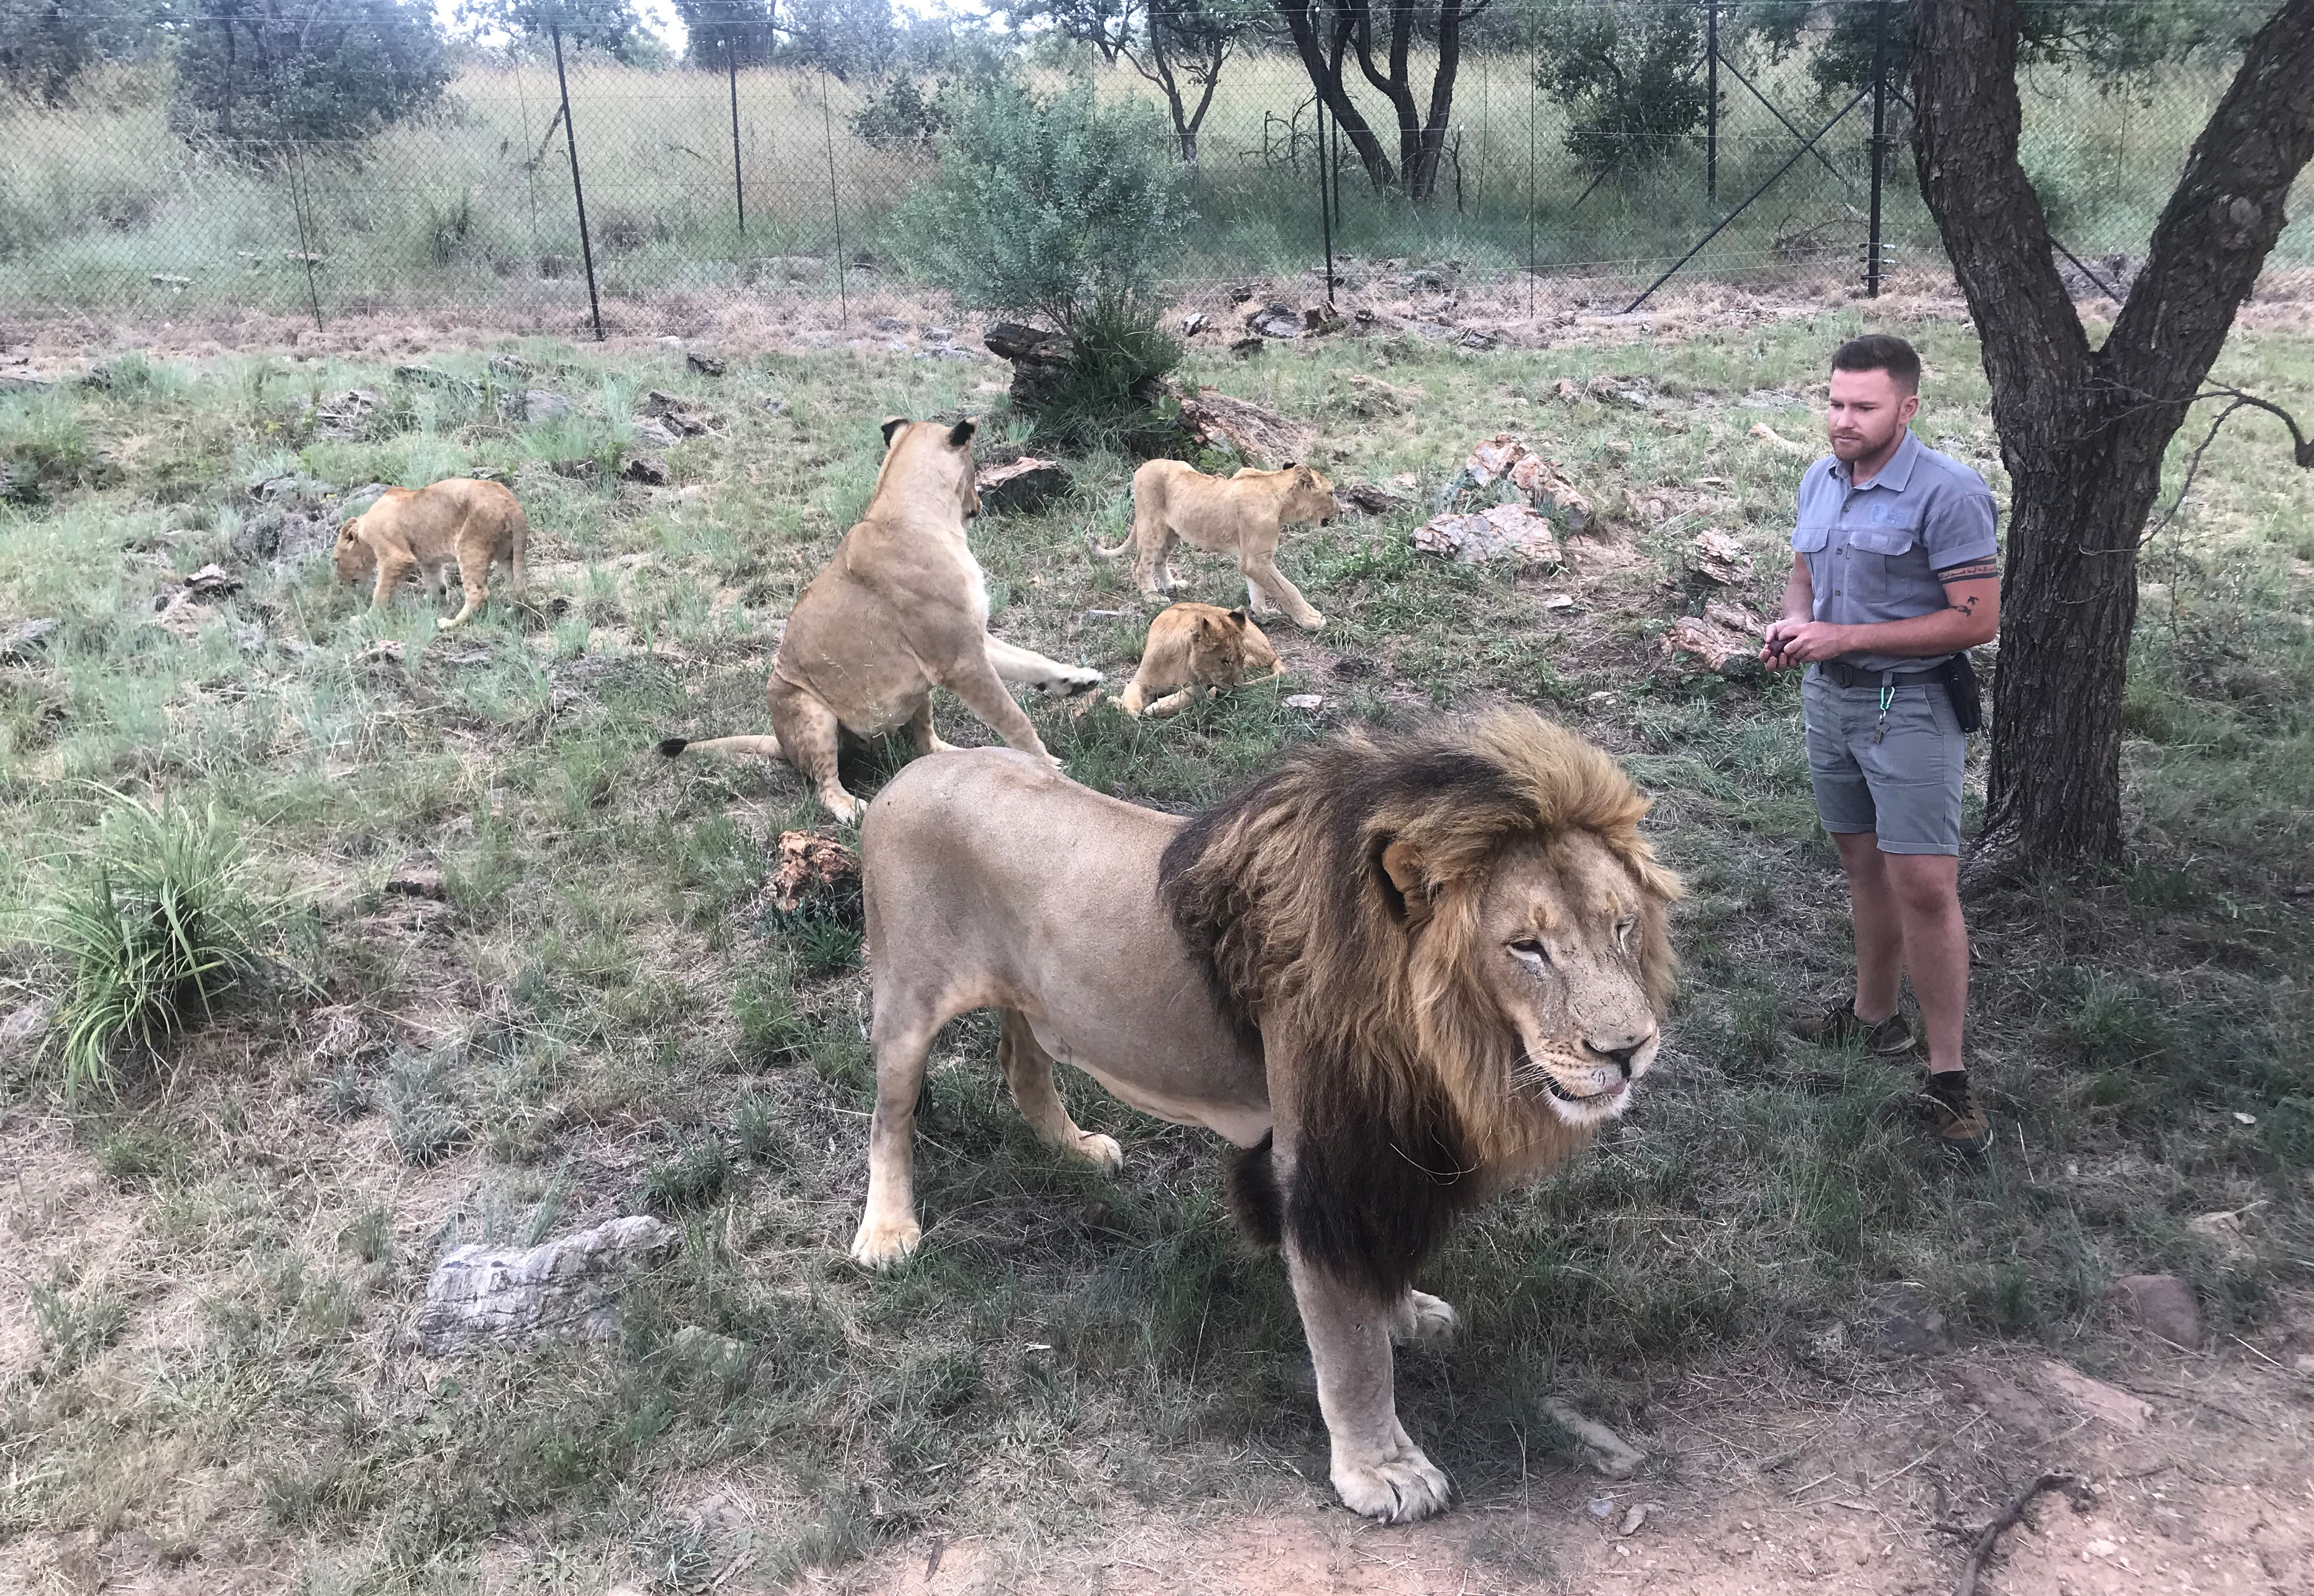 Dormían en una carpa, un león los atacó, y por poco los mata: la pesadilla  de una pareja francesa en un safari en África - Infobae